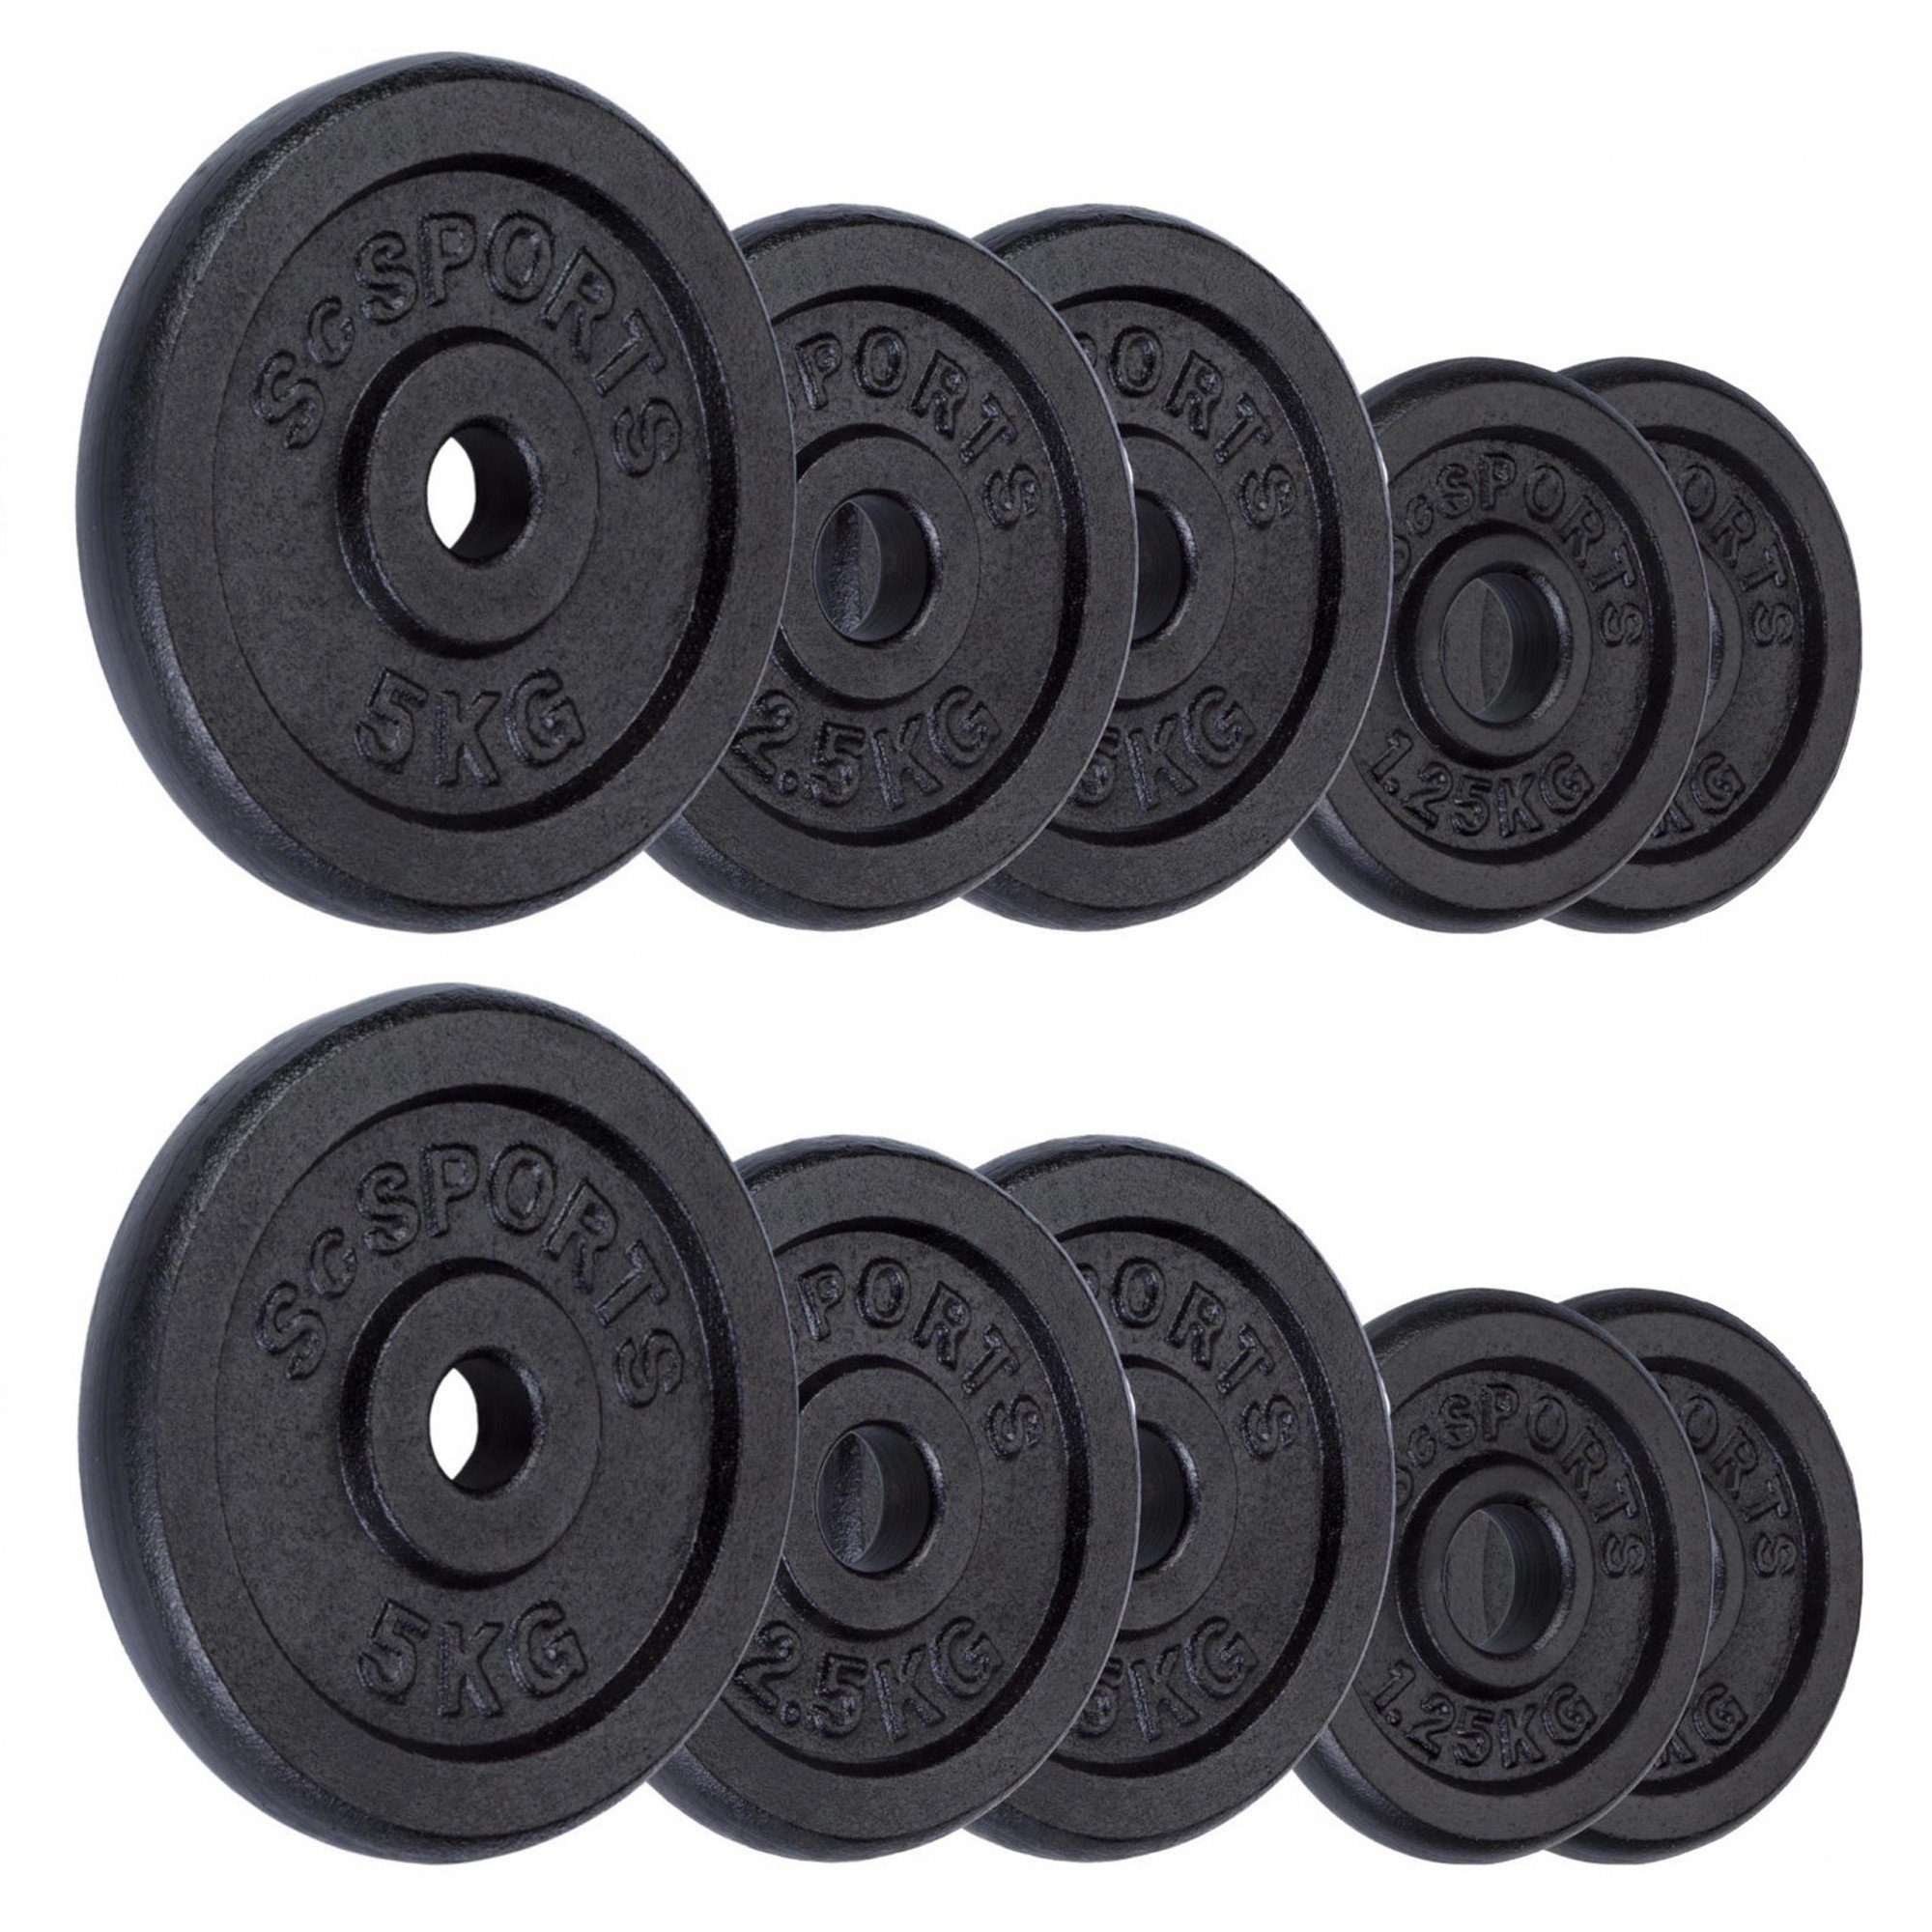 ScSPORTS® Hantelscheiben Set 25 kg 30/31mm Gusseisen Gewichtsscheiben Gewichte, (10003478-tlg)